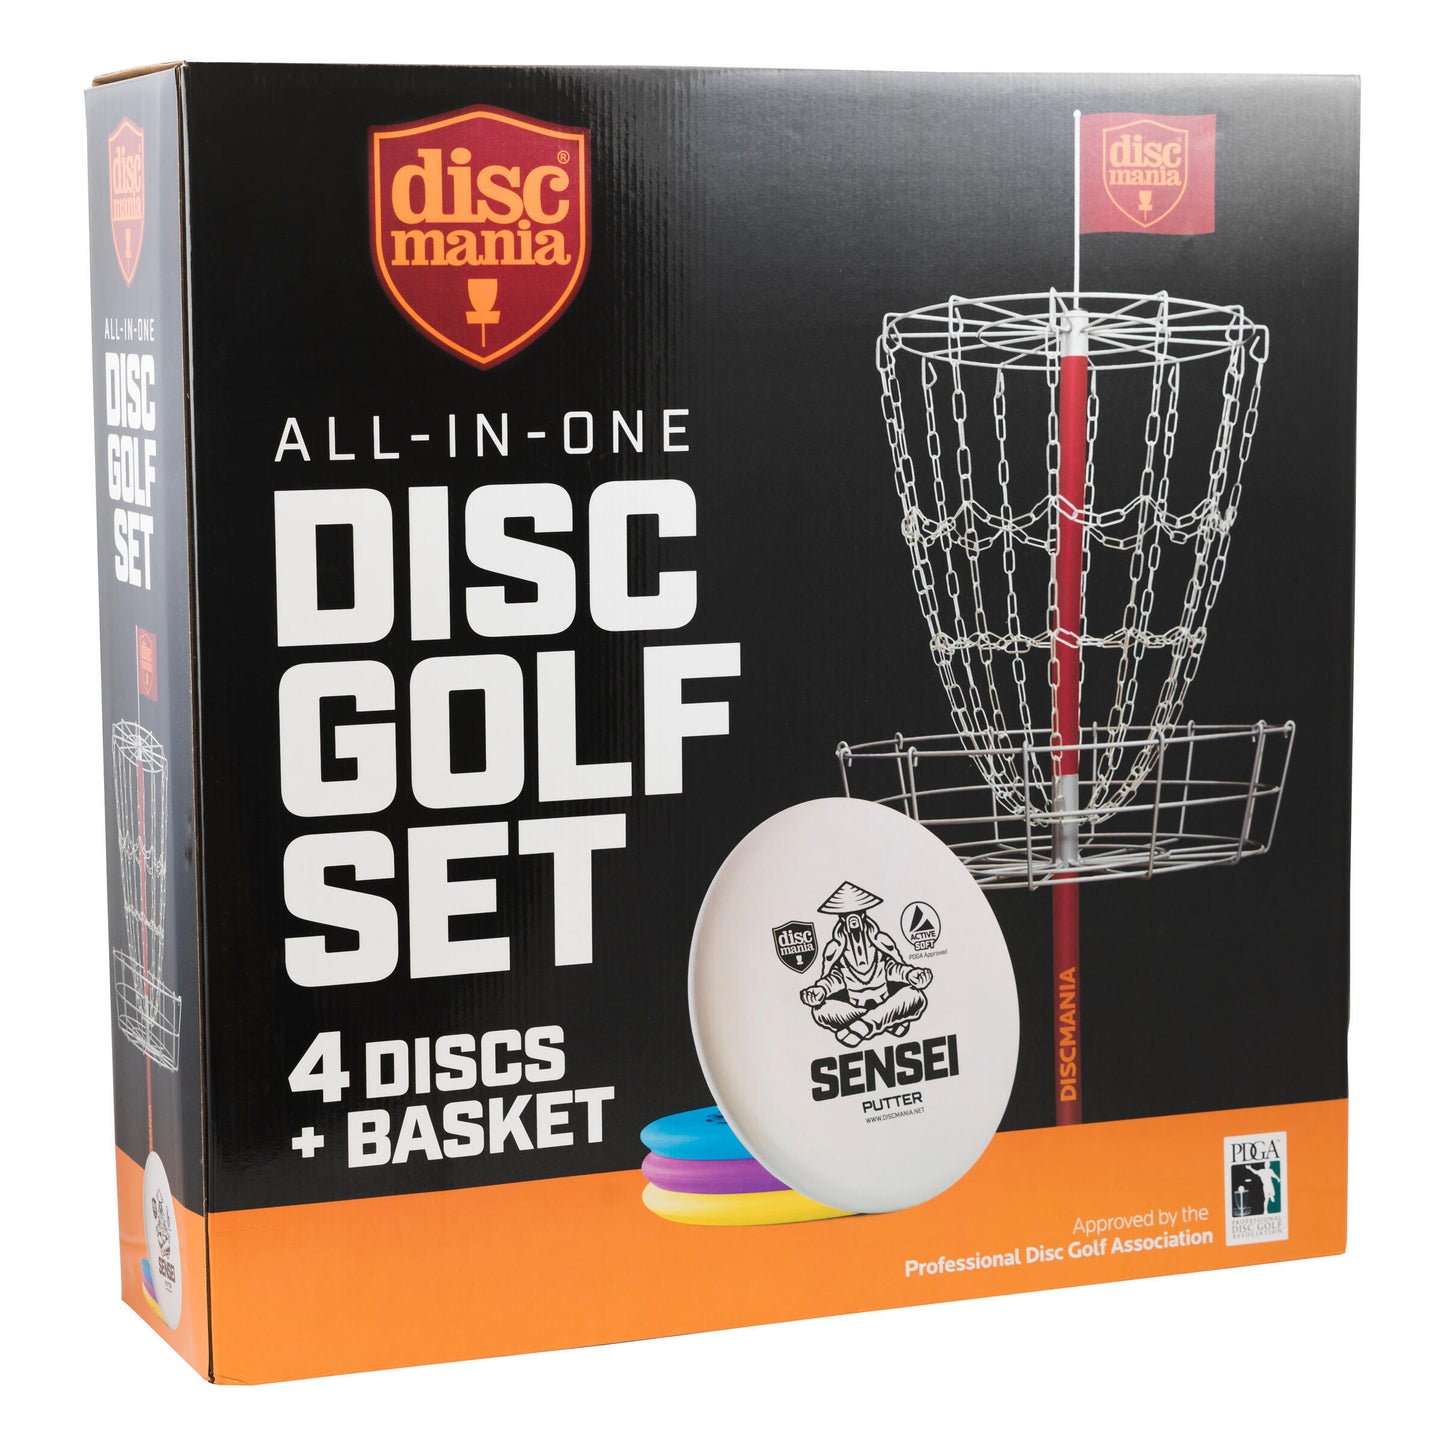 Discmania All-in-one Disc Golf Set - Compleet met target en discs